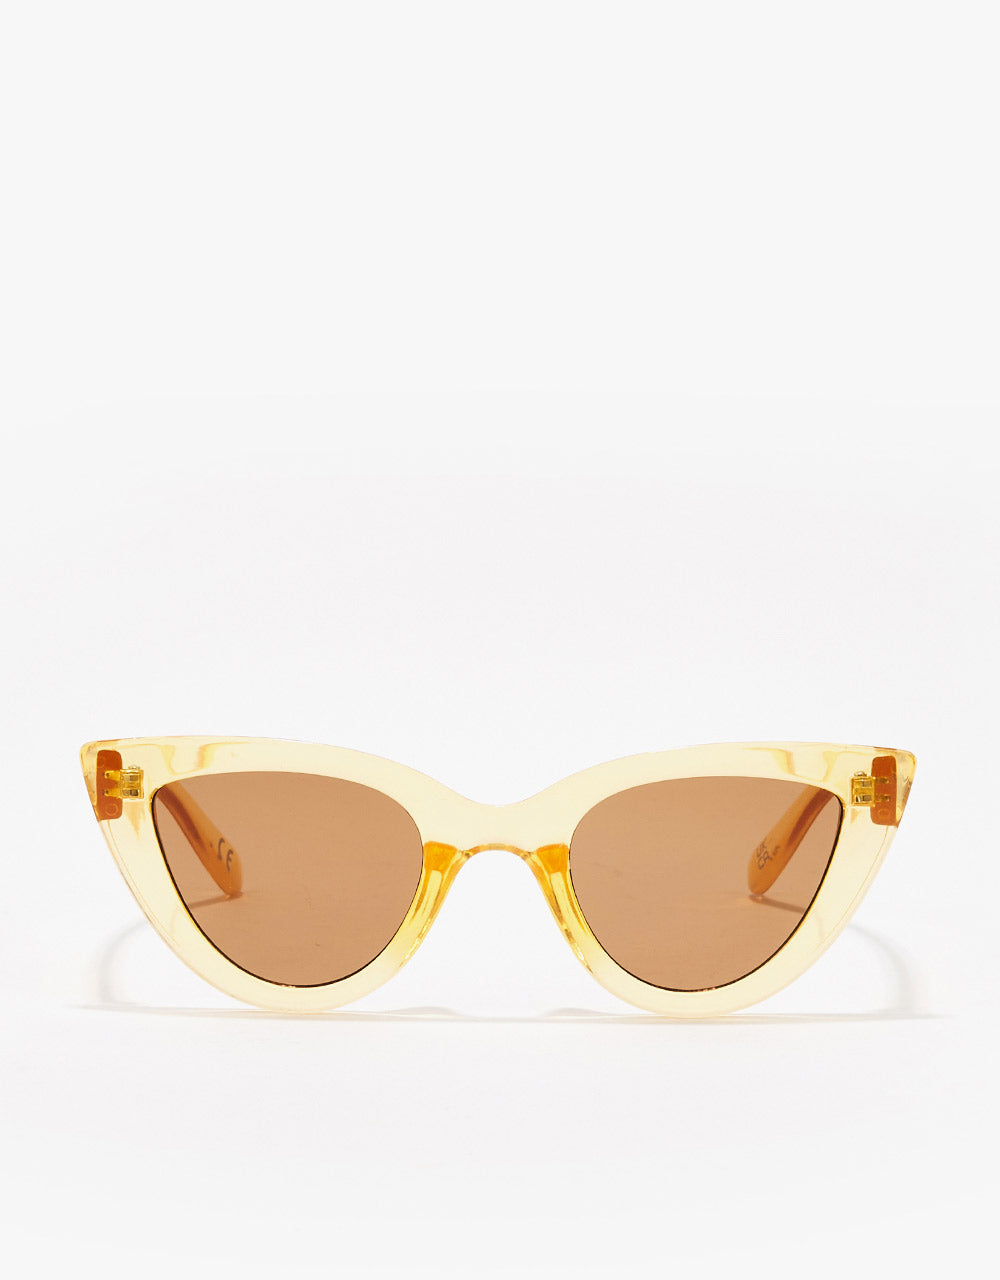 Vans Womens Poolside Sunglasses - Flax